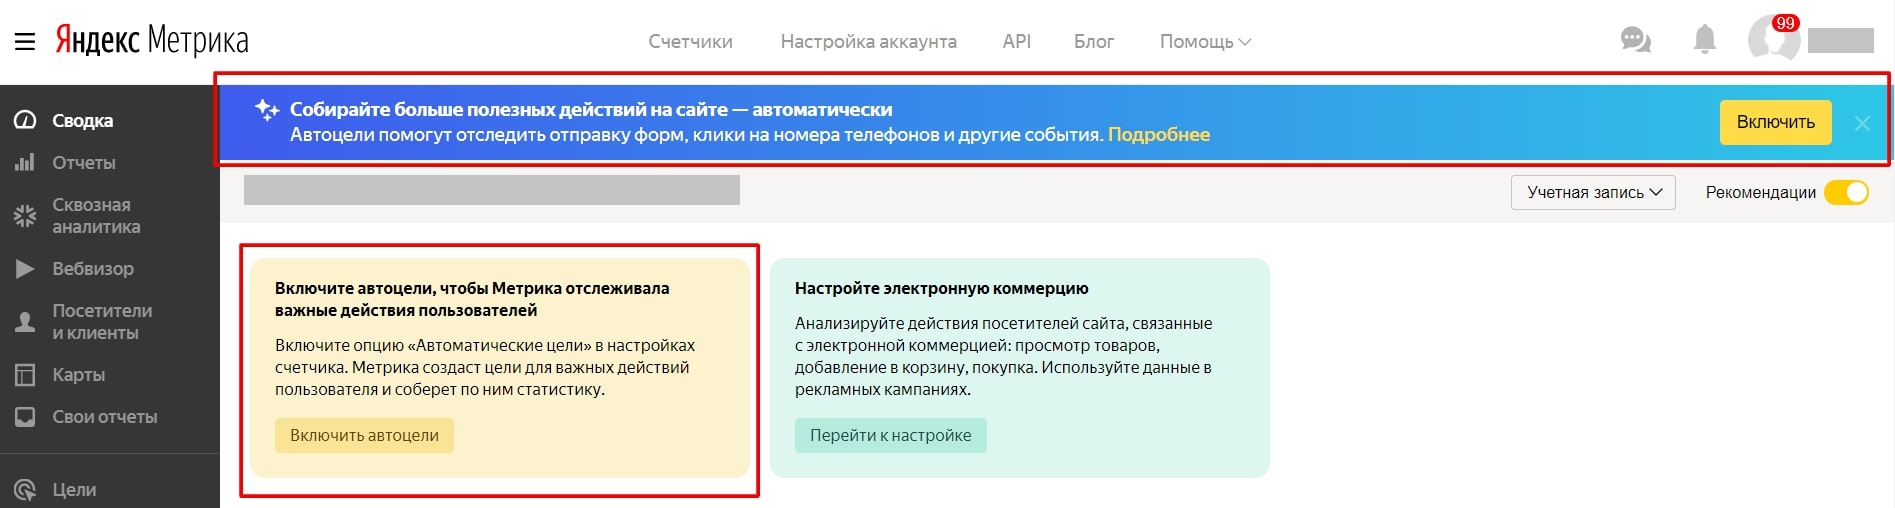 Рекомендации по настройке автоматических целей в Яндекс.Метрике